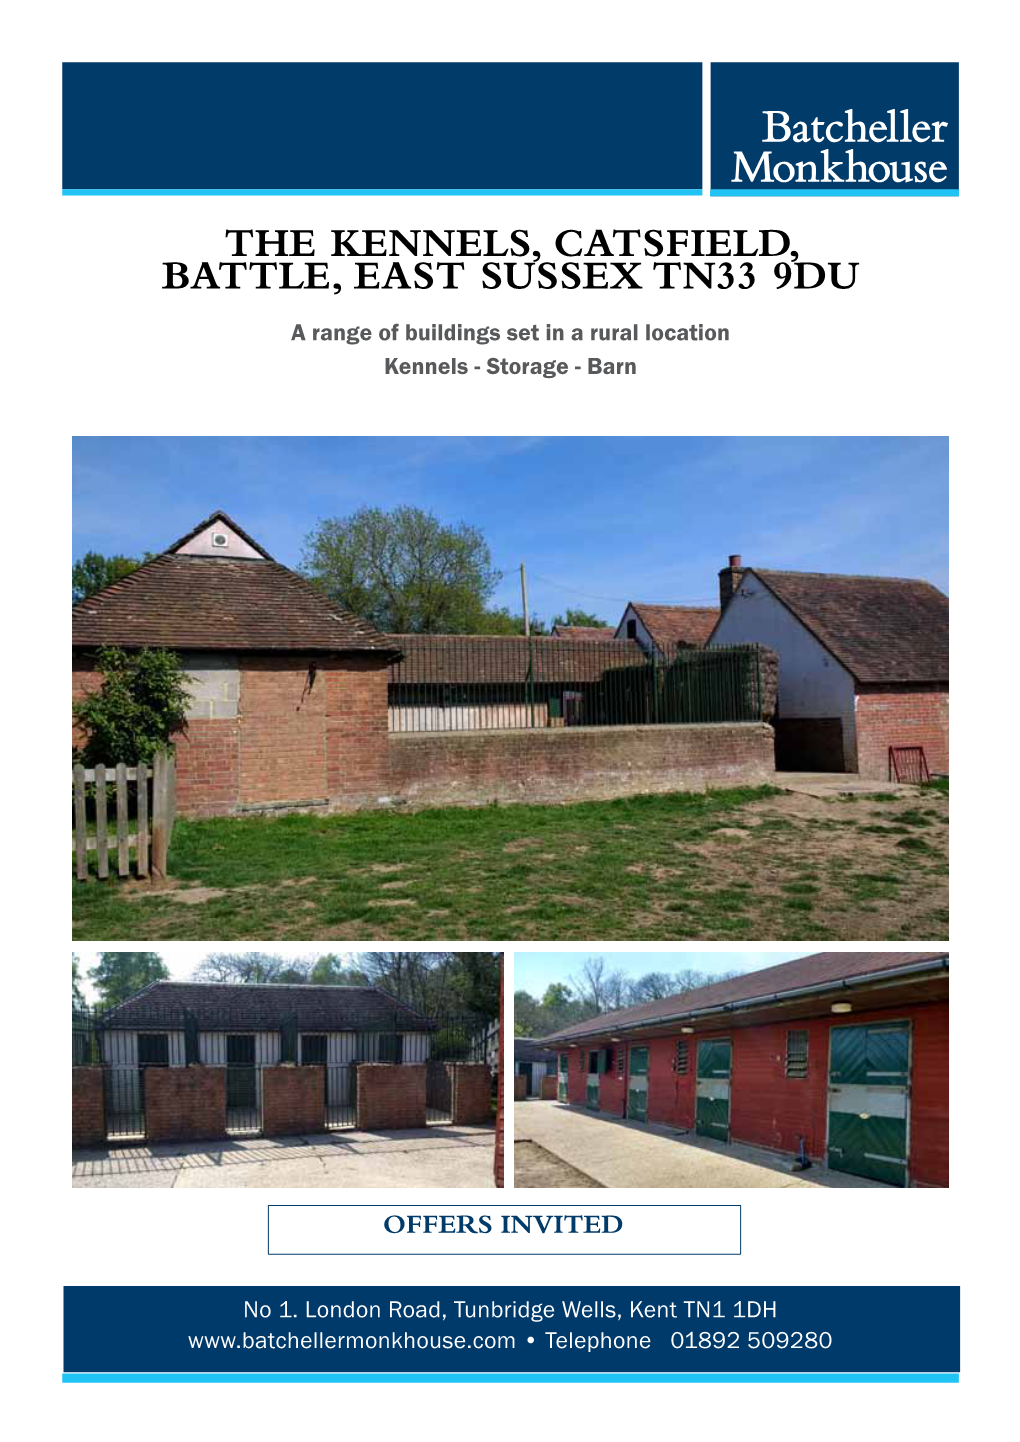 The Kennels, Catsfield, Battle, East Sussex Tn33 9Du